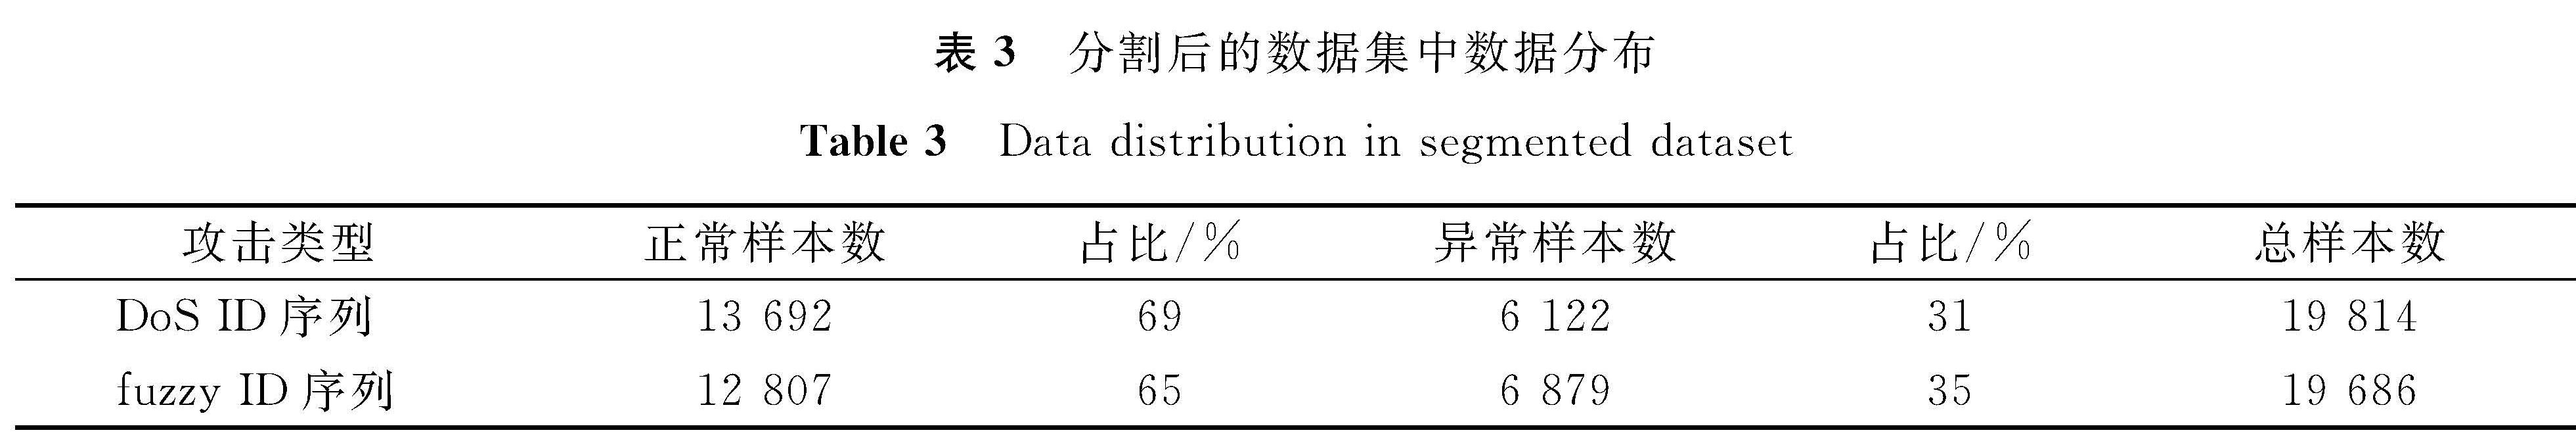 表3 分割后的数据集中数据分布<br/>Table 3 Data distribution in segmented dataset